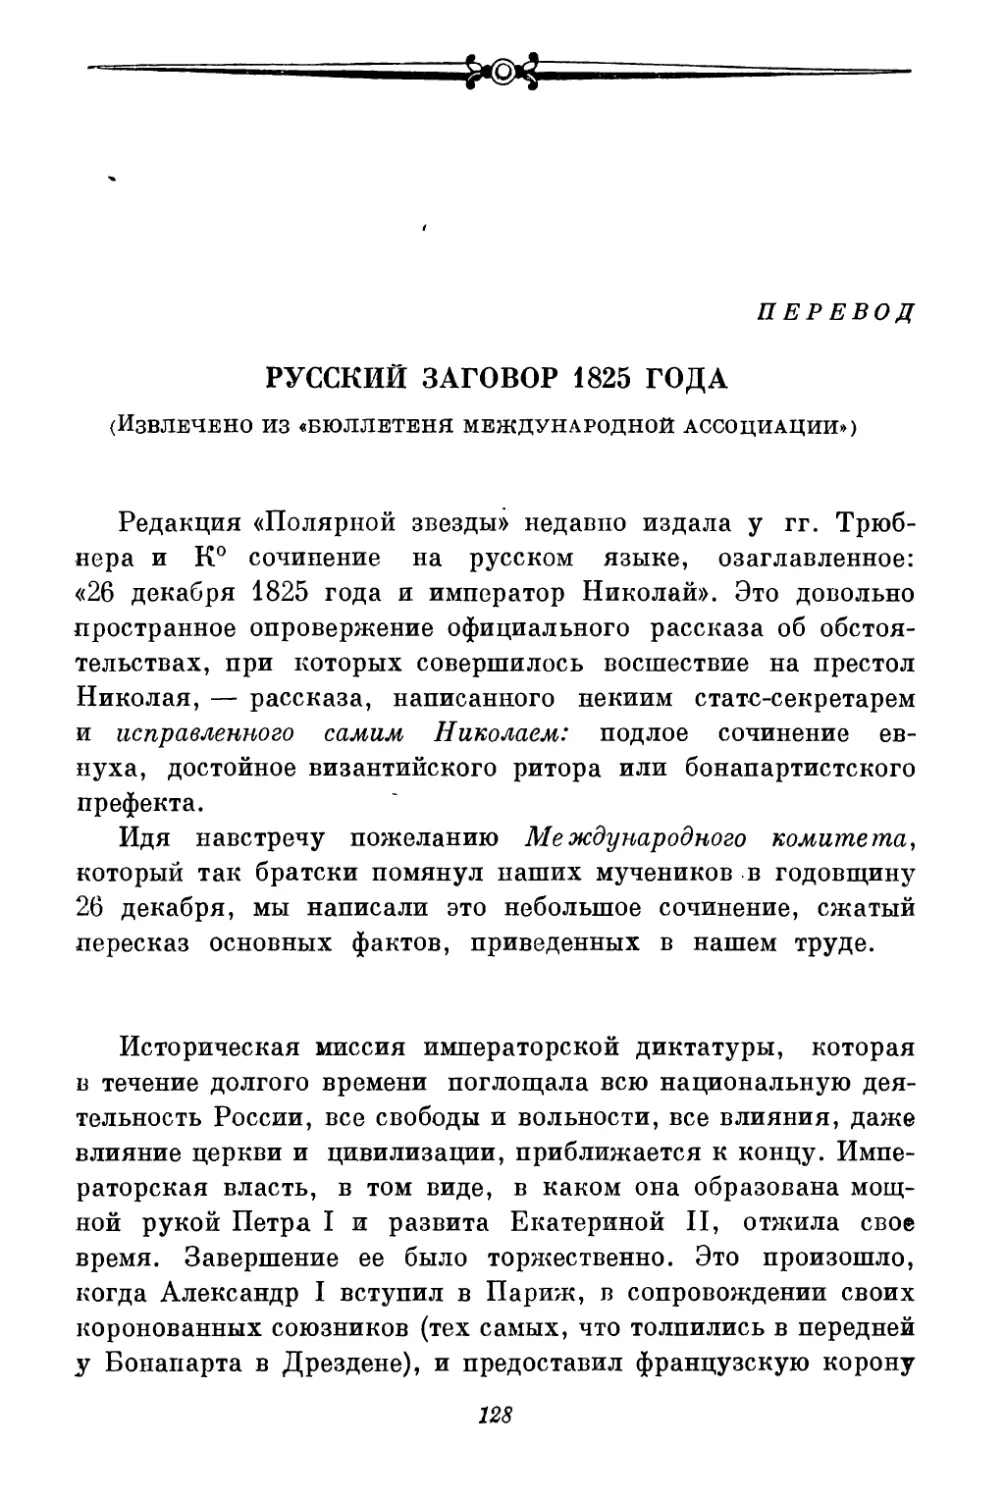 Русский заговор 1825 года <перевод>